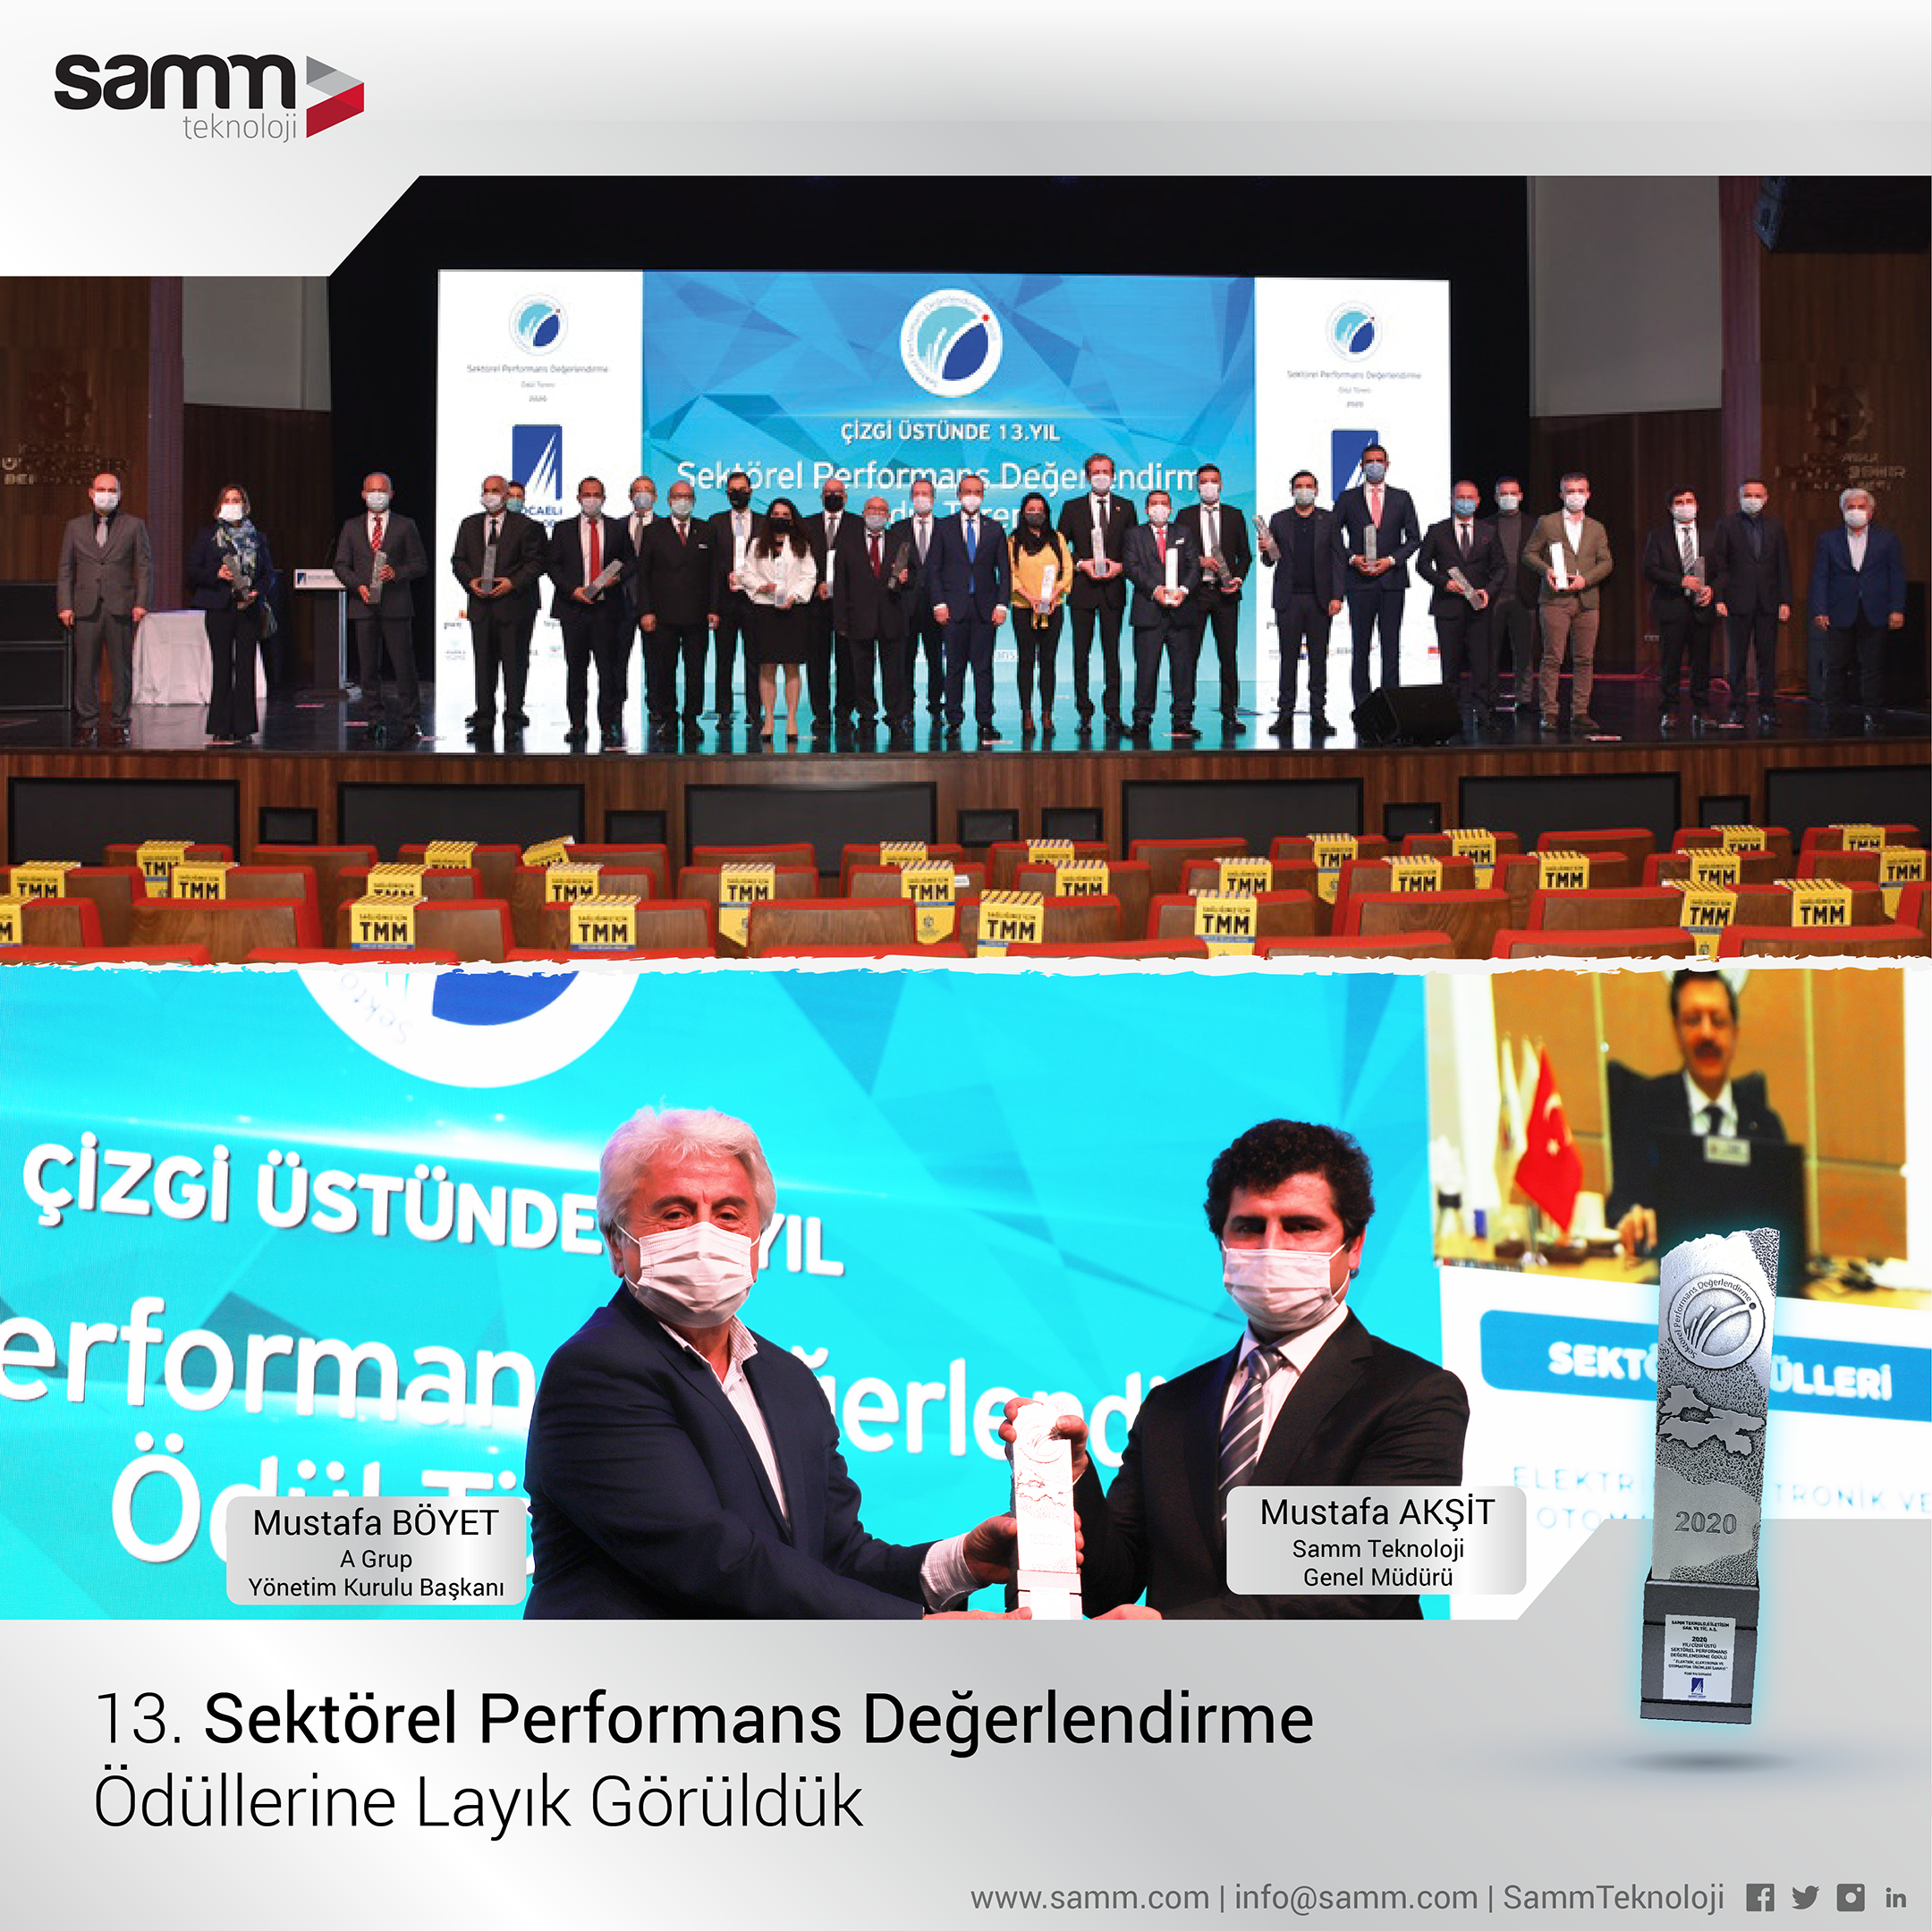 Rıfat Hisarcıklıoğlu, Mustafa Akşit ve Mustafa Böyet / 13. Sektörel Performans Değerlendirme Ödüllerine Layık Görüldük / Samm Teknoloji